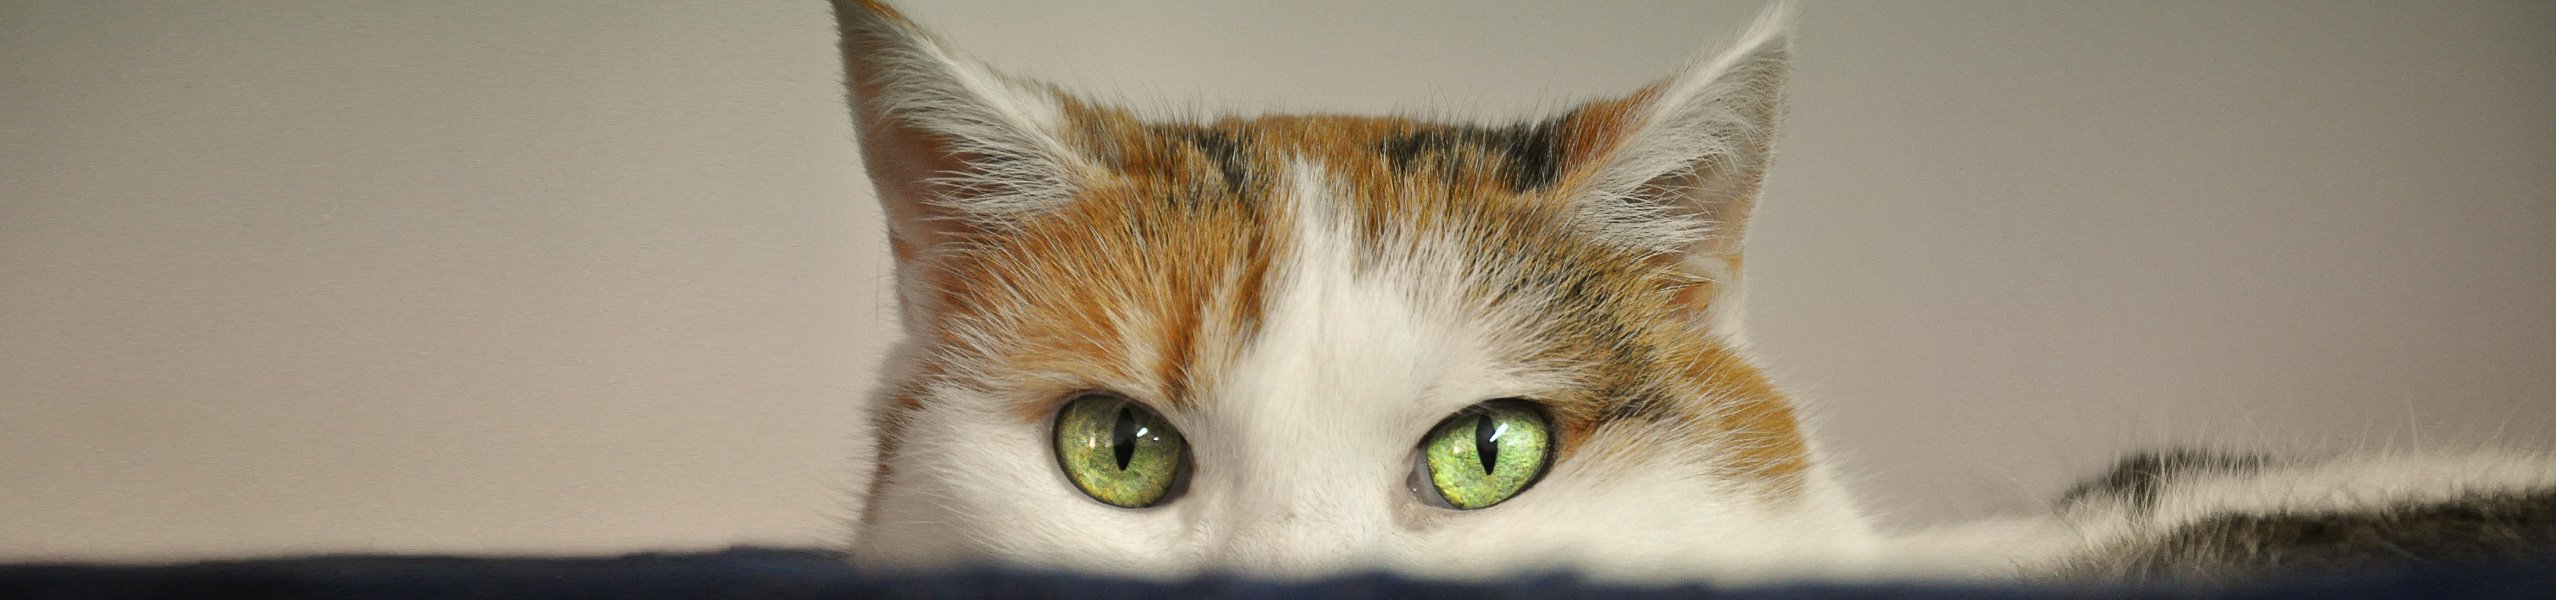 Katze mit Leckekzemen: Ursache finden und richtig behandeln